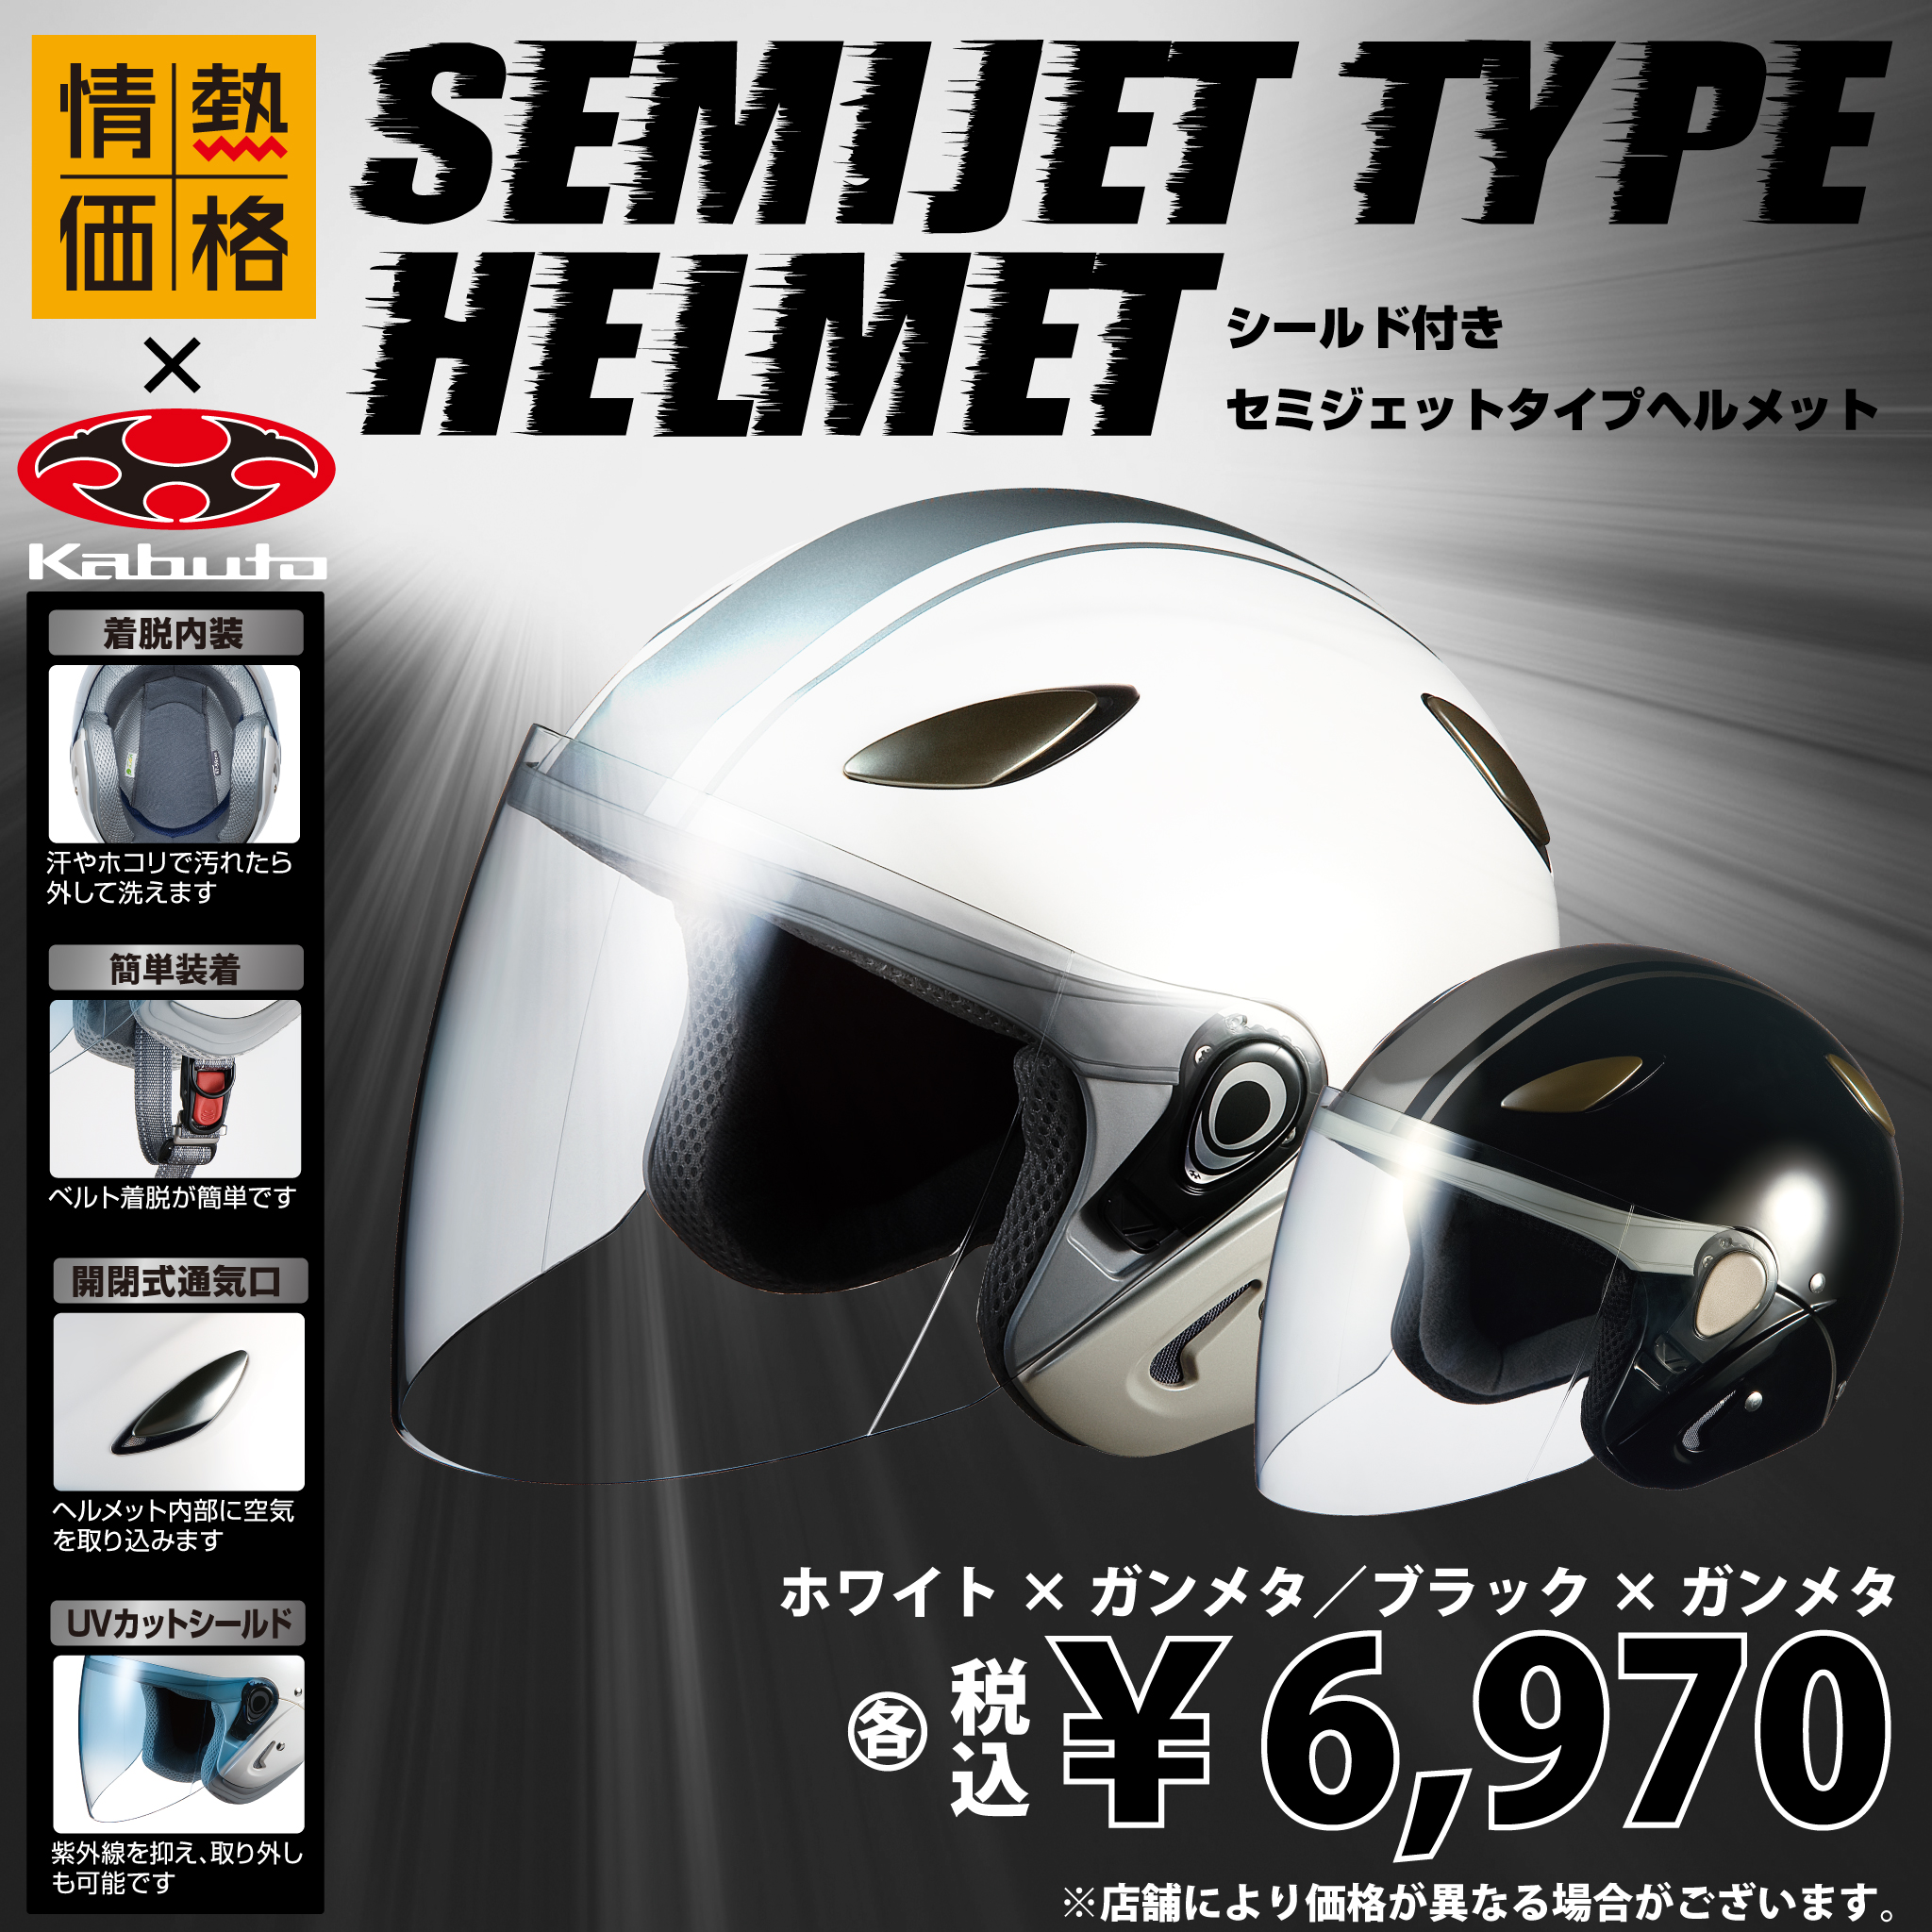 驚安の殿堂 ドン キホーテ おしらせ係より Yo 情熱価格 セミジェットタイプヘルメット は 安全性と軽量性を両立させデザインも なこだわりのヘルメット バイク用ヘルメット ギアブランド Kabuto との共同企画商品です Http T Co Fhcf6pnk